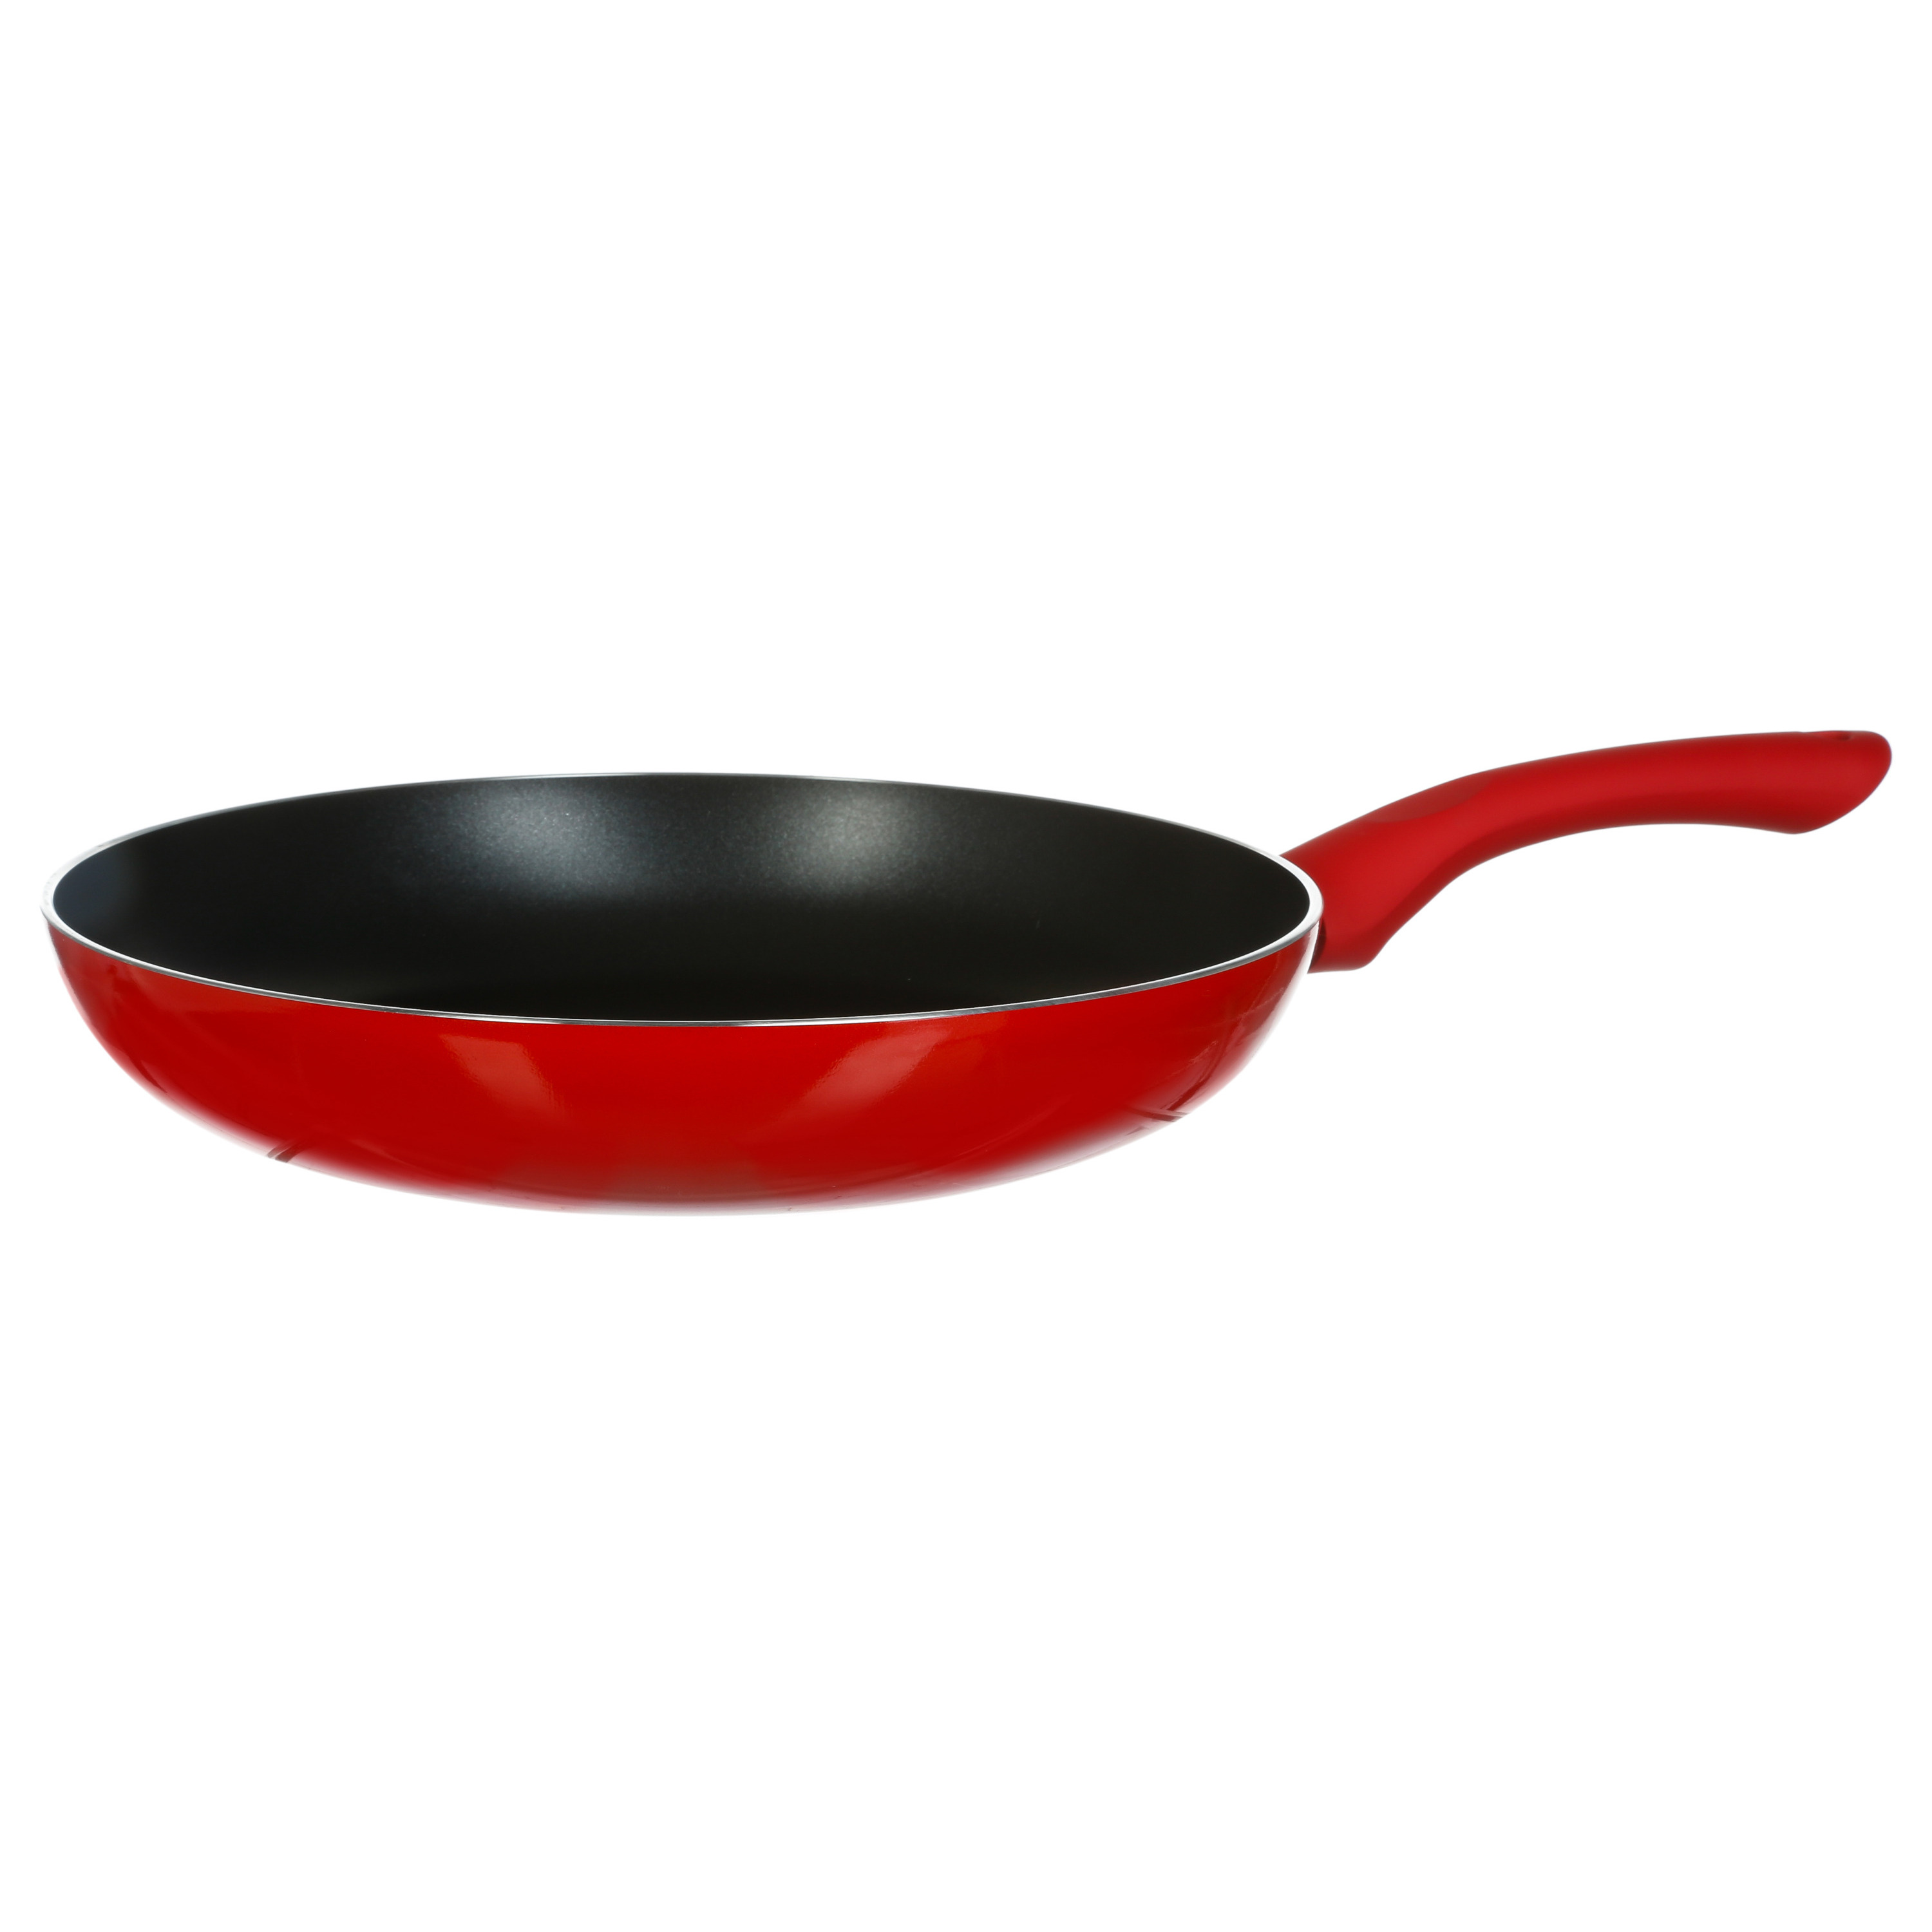 Koekenpan Alle kookplaten geschikt rood-zwart dia 26 cm